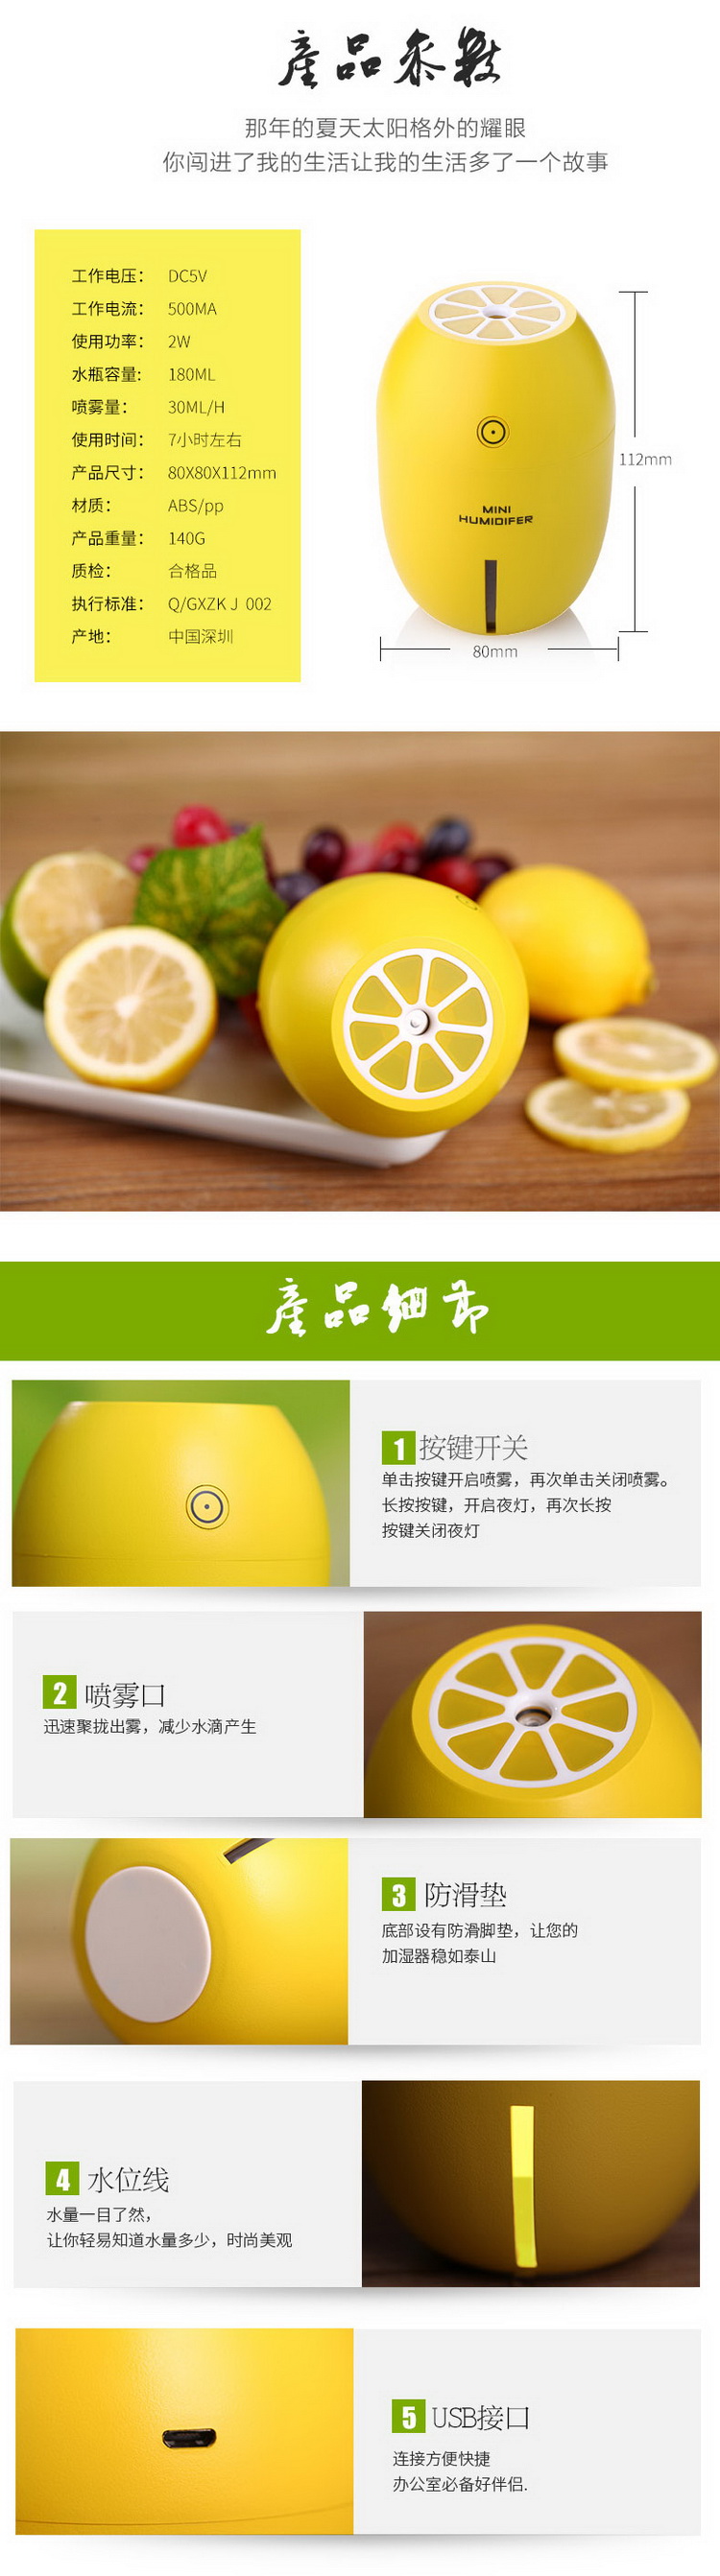 柠檬加湿器描述-07.JPG